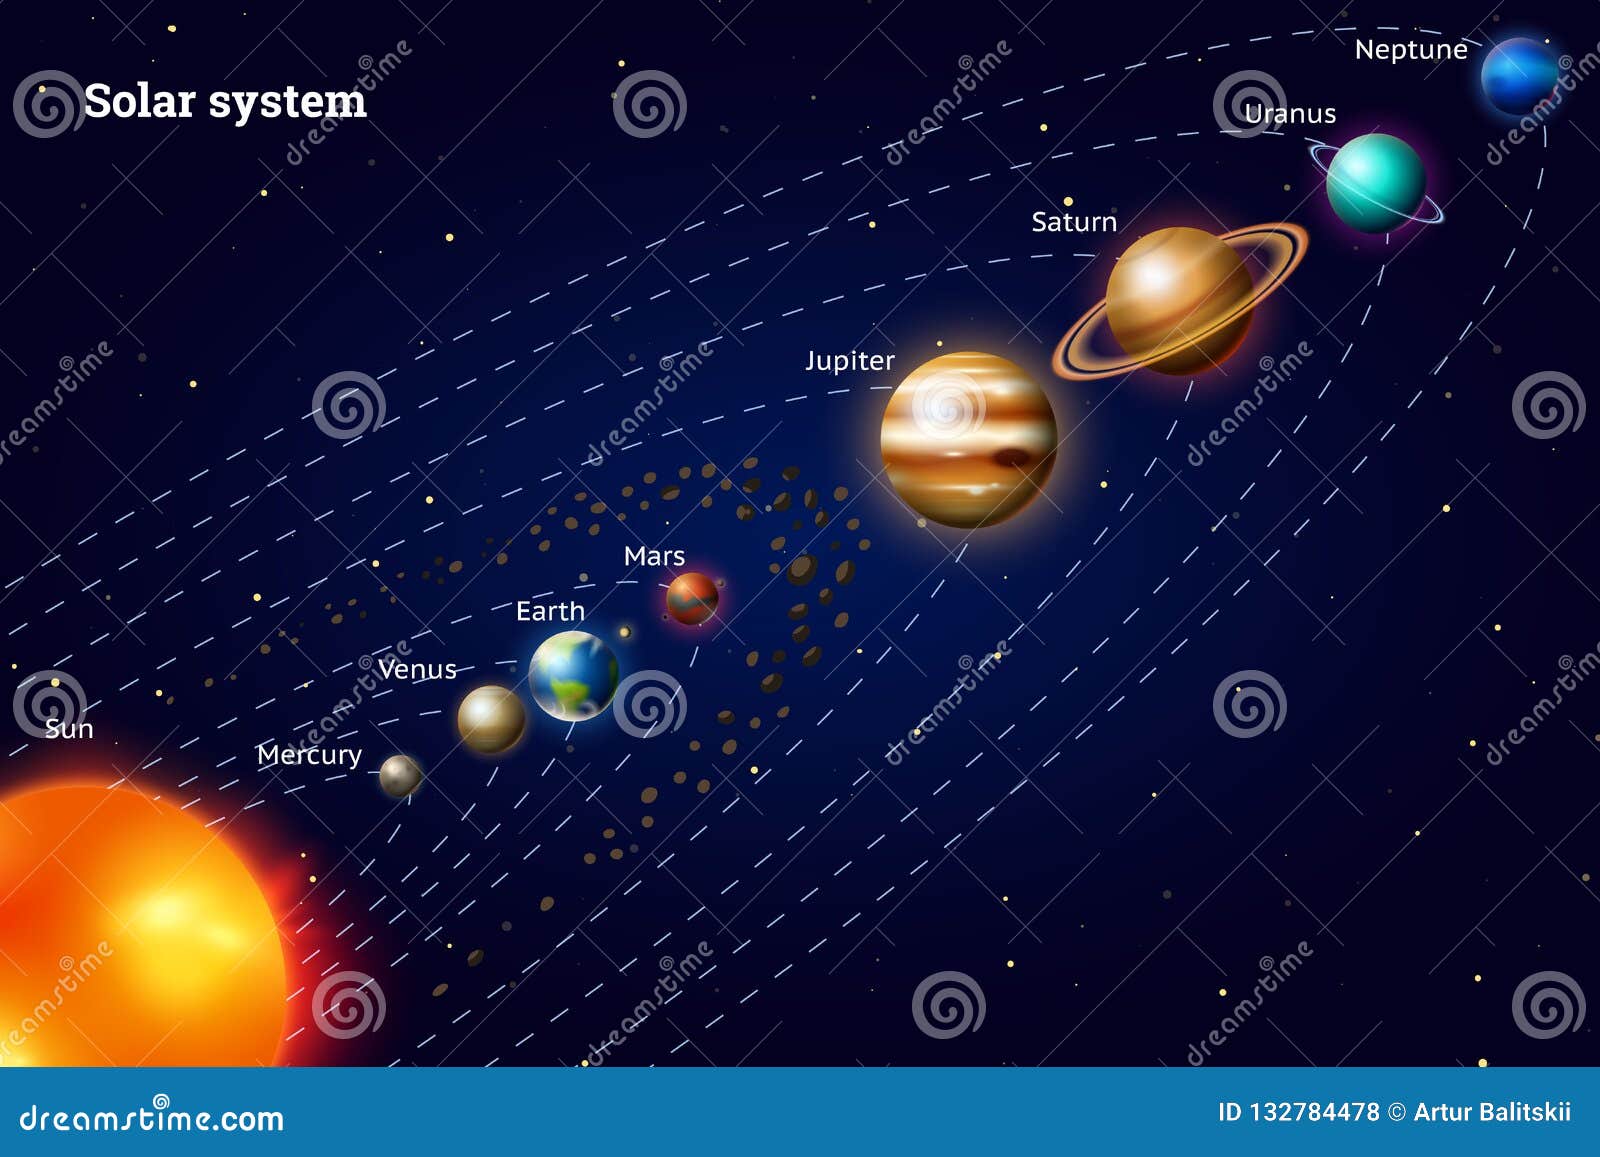 Этапы жизни планеты. Сравнение солнца и планет. Milky way Solar System Comparison.